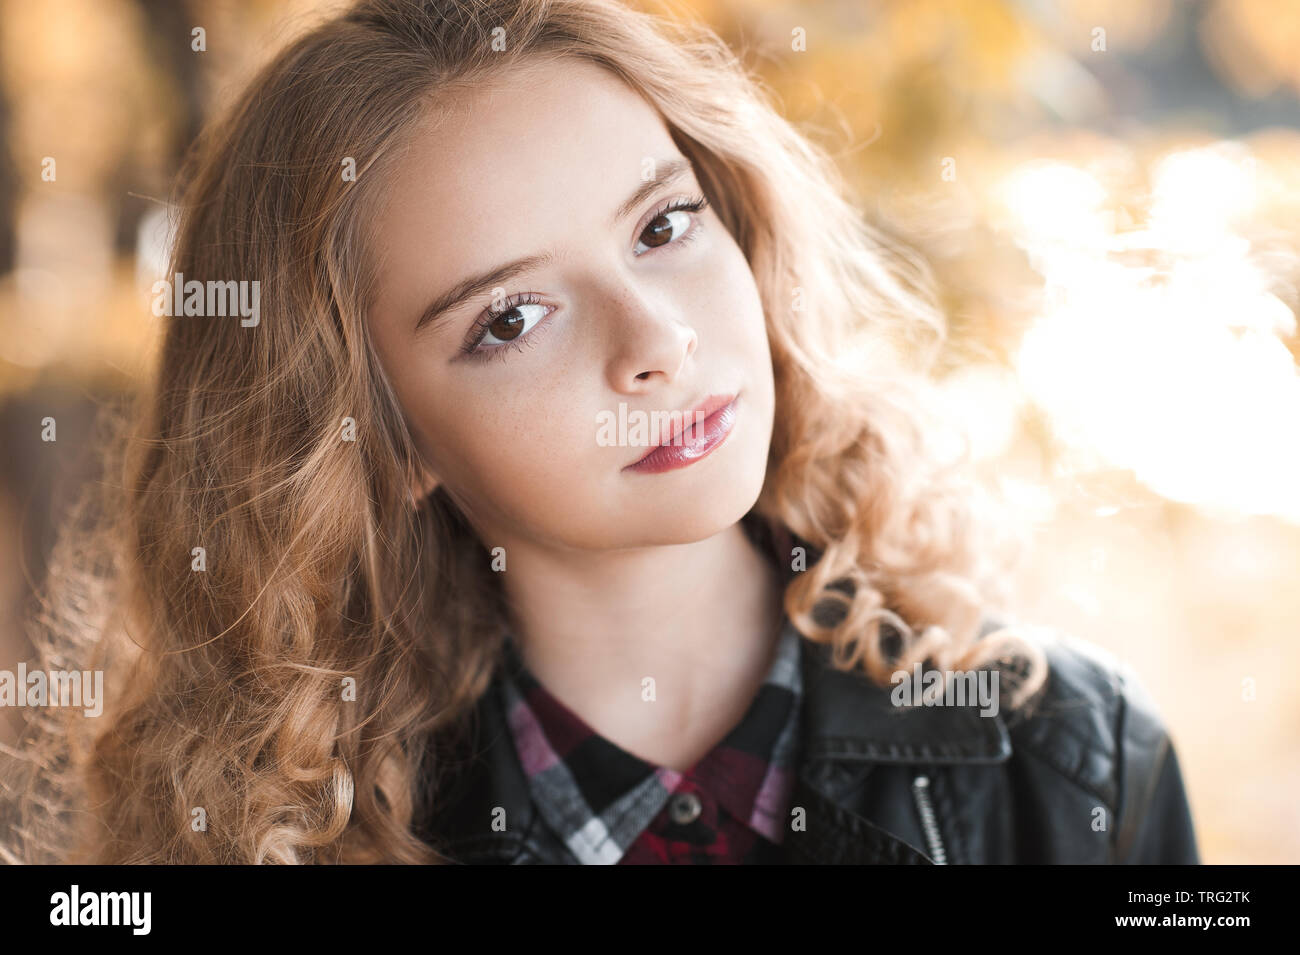 Belle blonde adolescente 12-14 ans portant blouson de cuir à l'extérieur. En regardant la caméra. Saison d'automne. Banque D'Images